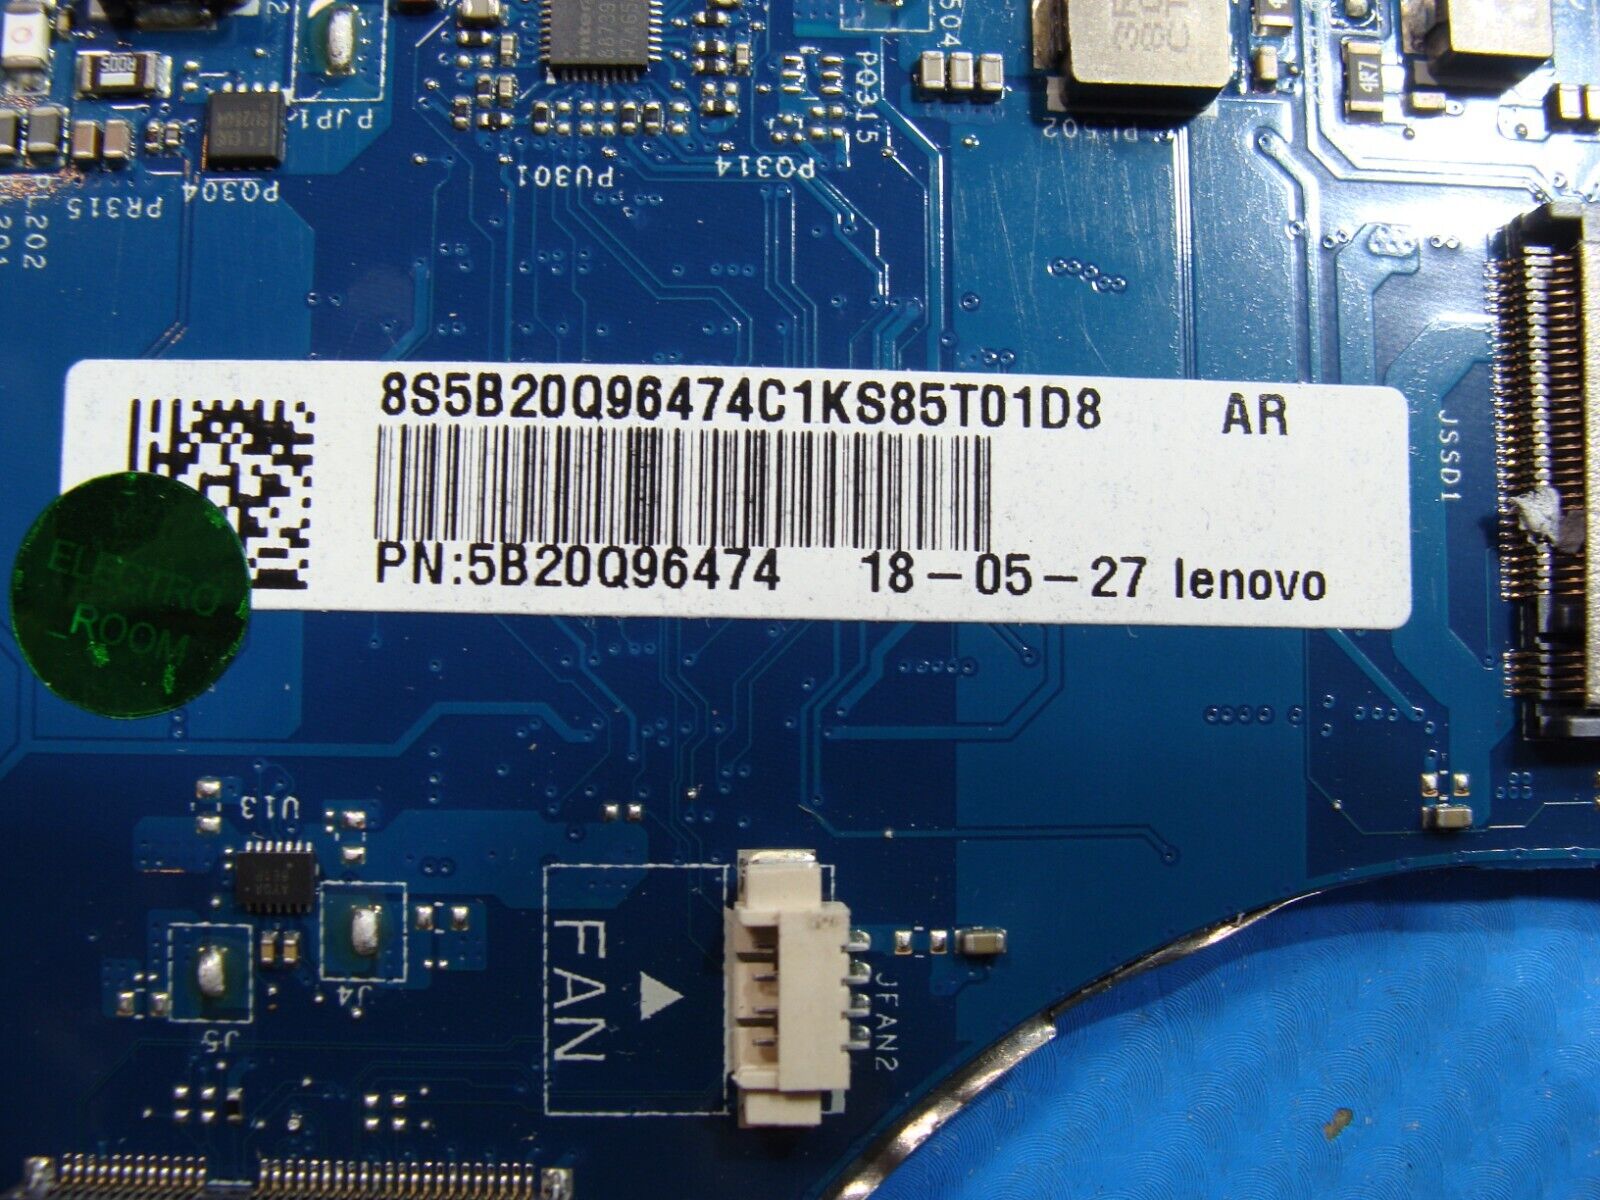 Lenovo Yoga 730-15IKB 15.6